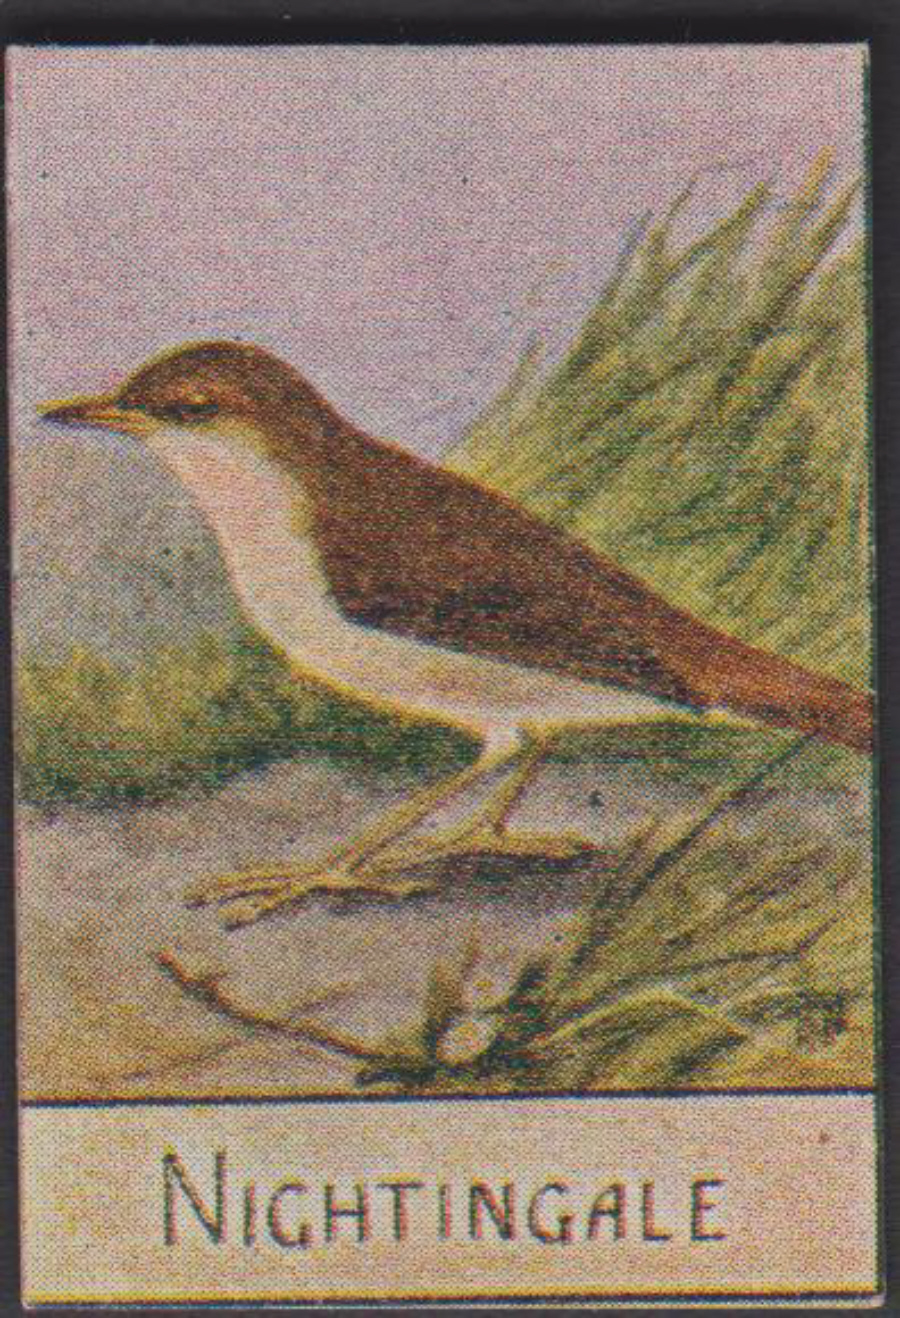 Spratt's British Bird Series Numbered No 77 Nightingale